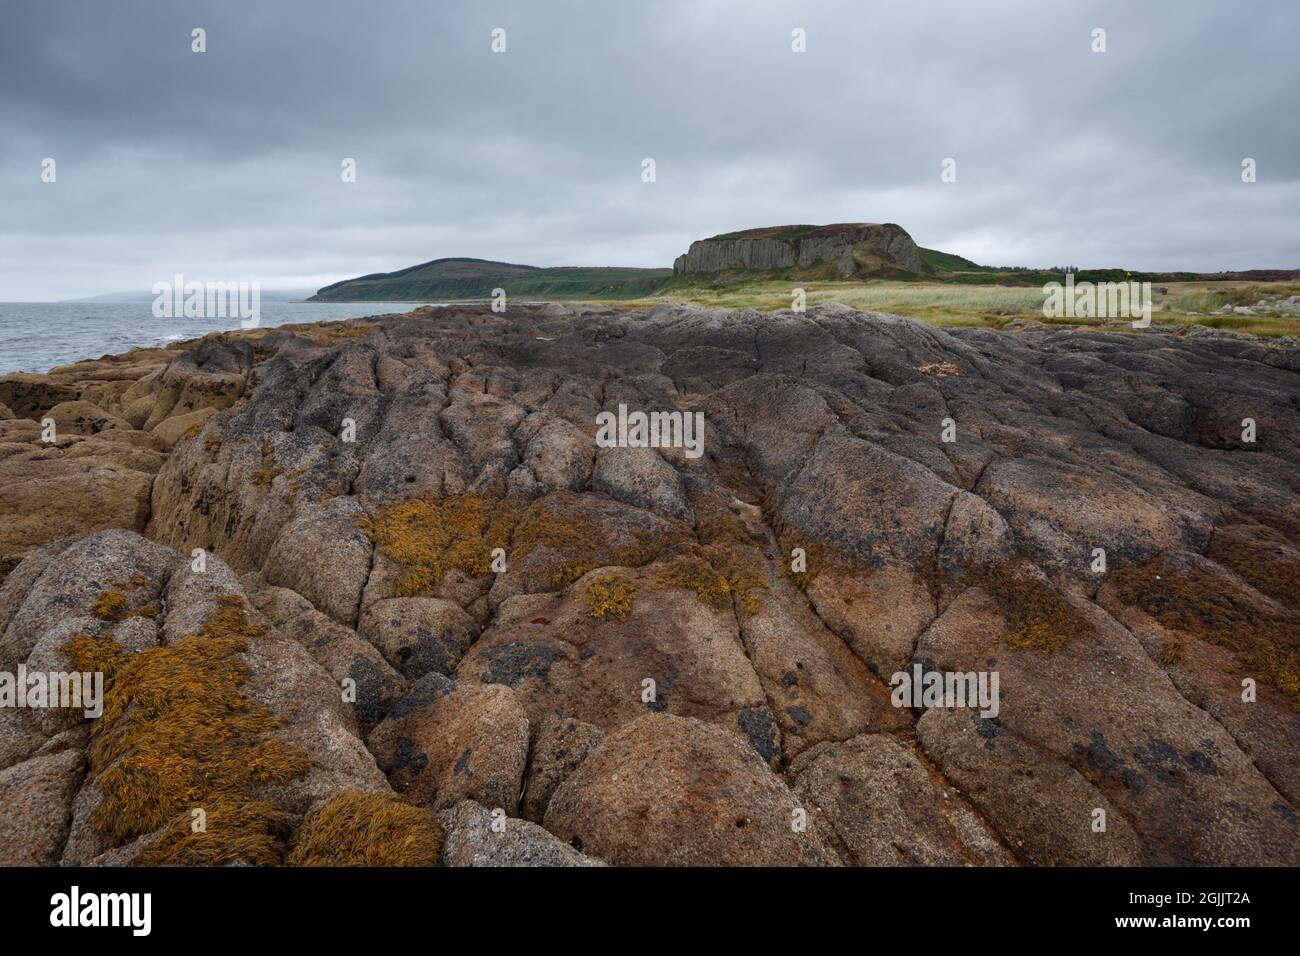 Drumadoon point. Île d'Arran. Écosse, Royaume-Uni. Géologie volcanique (ignée) sur l'estran et dans les rebords éloignés. Banque D'Images